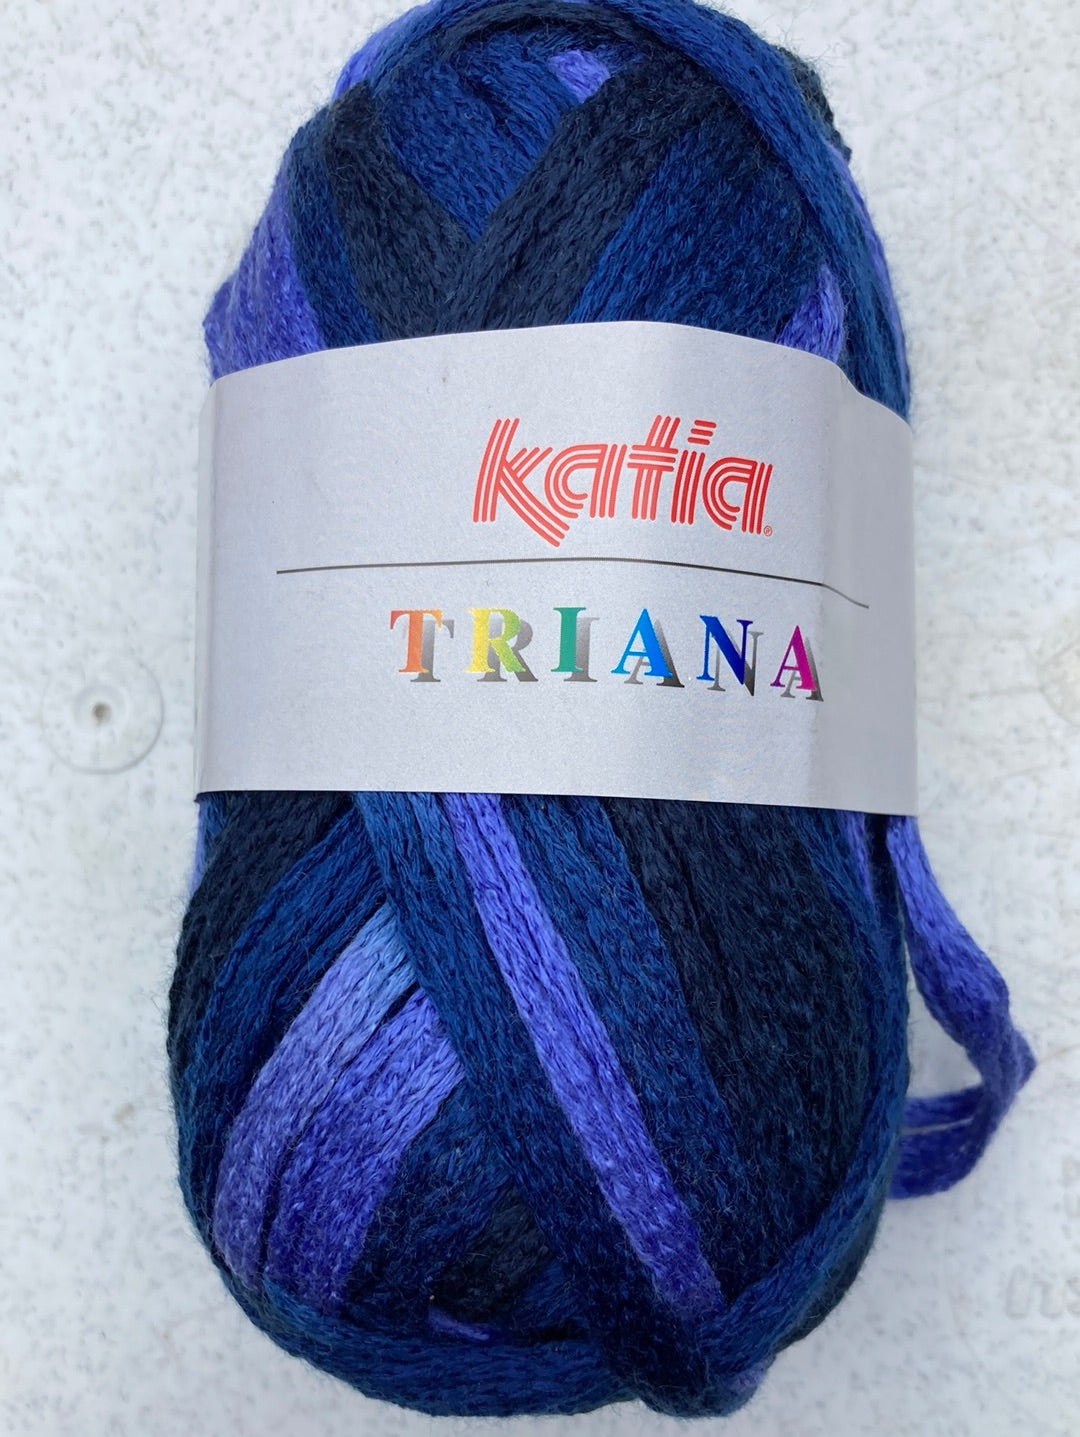 Triana - Katia (Loopy Wool)